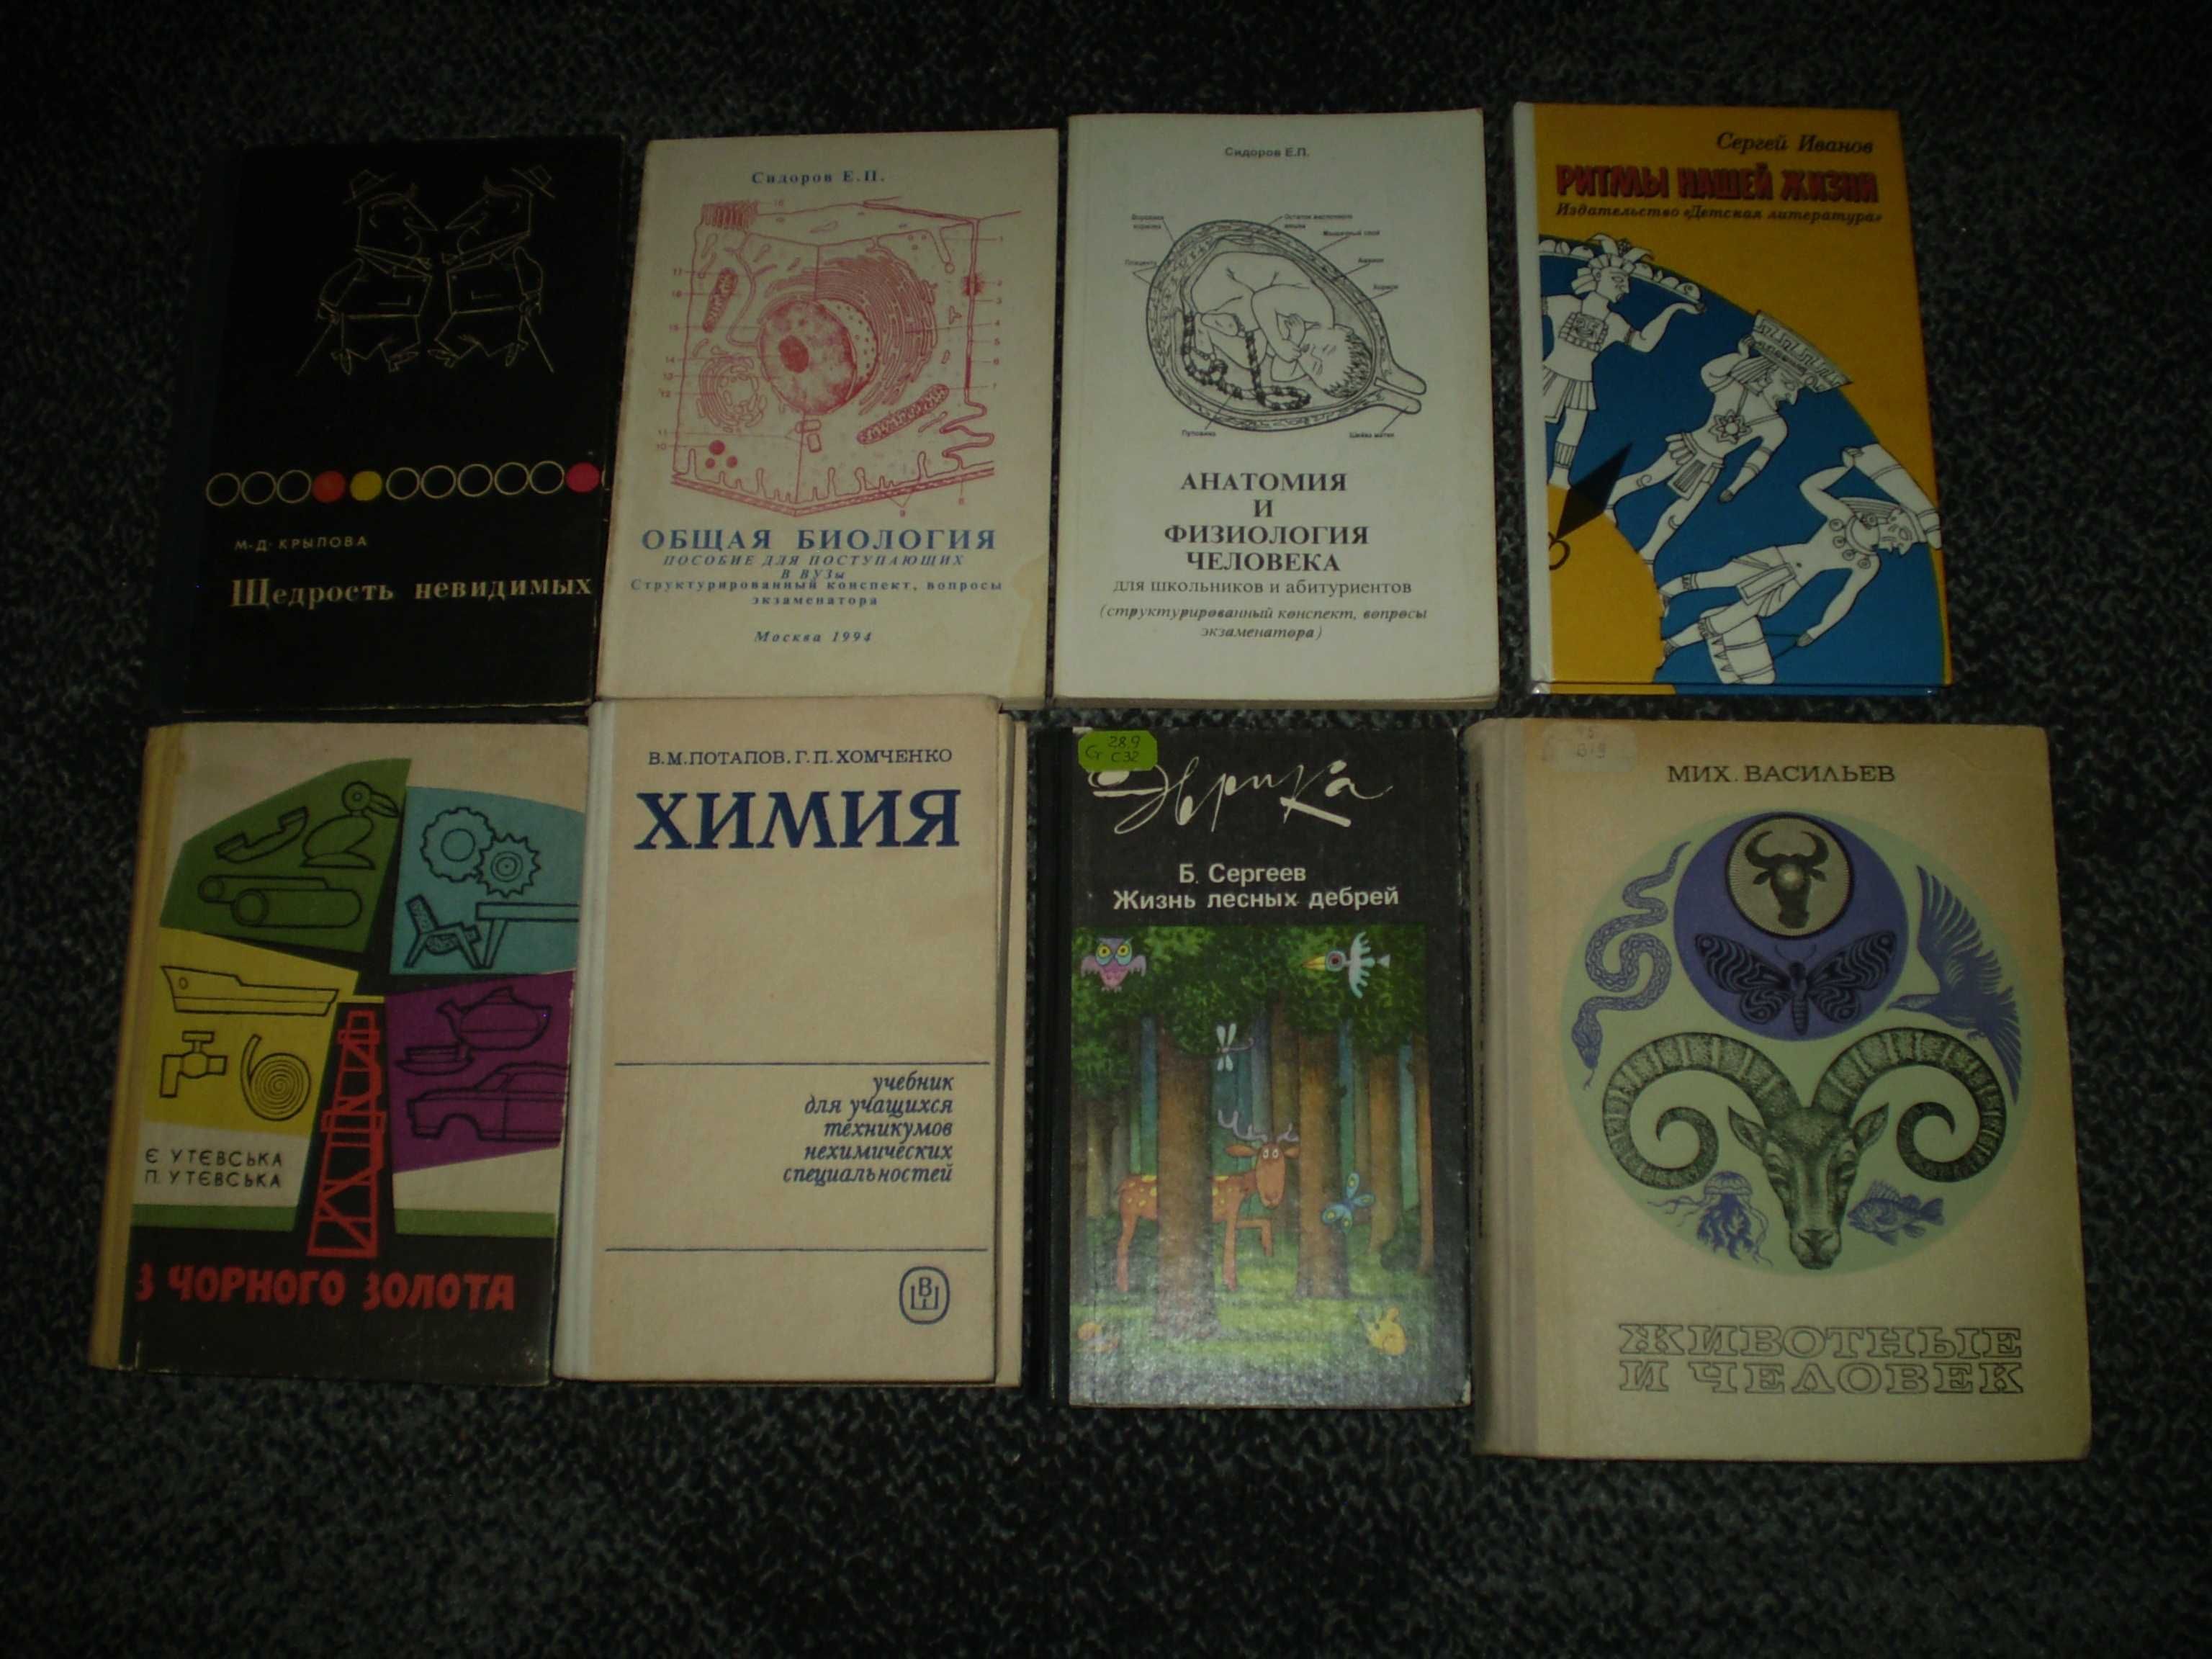 Книги по химии и биологии для школьников. 1966 – 1996гг.